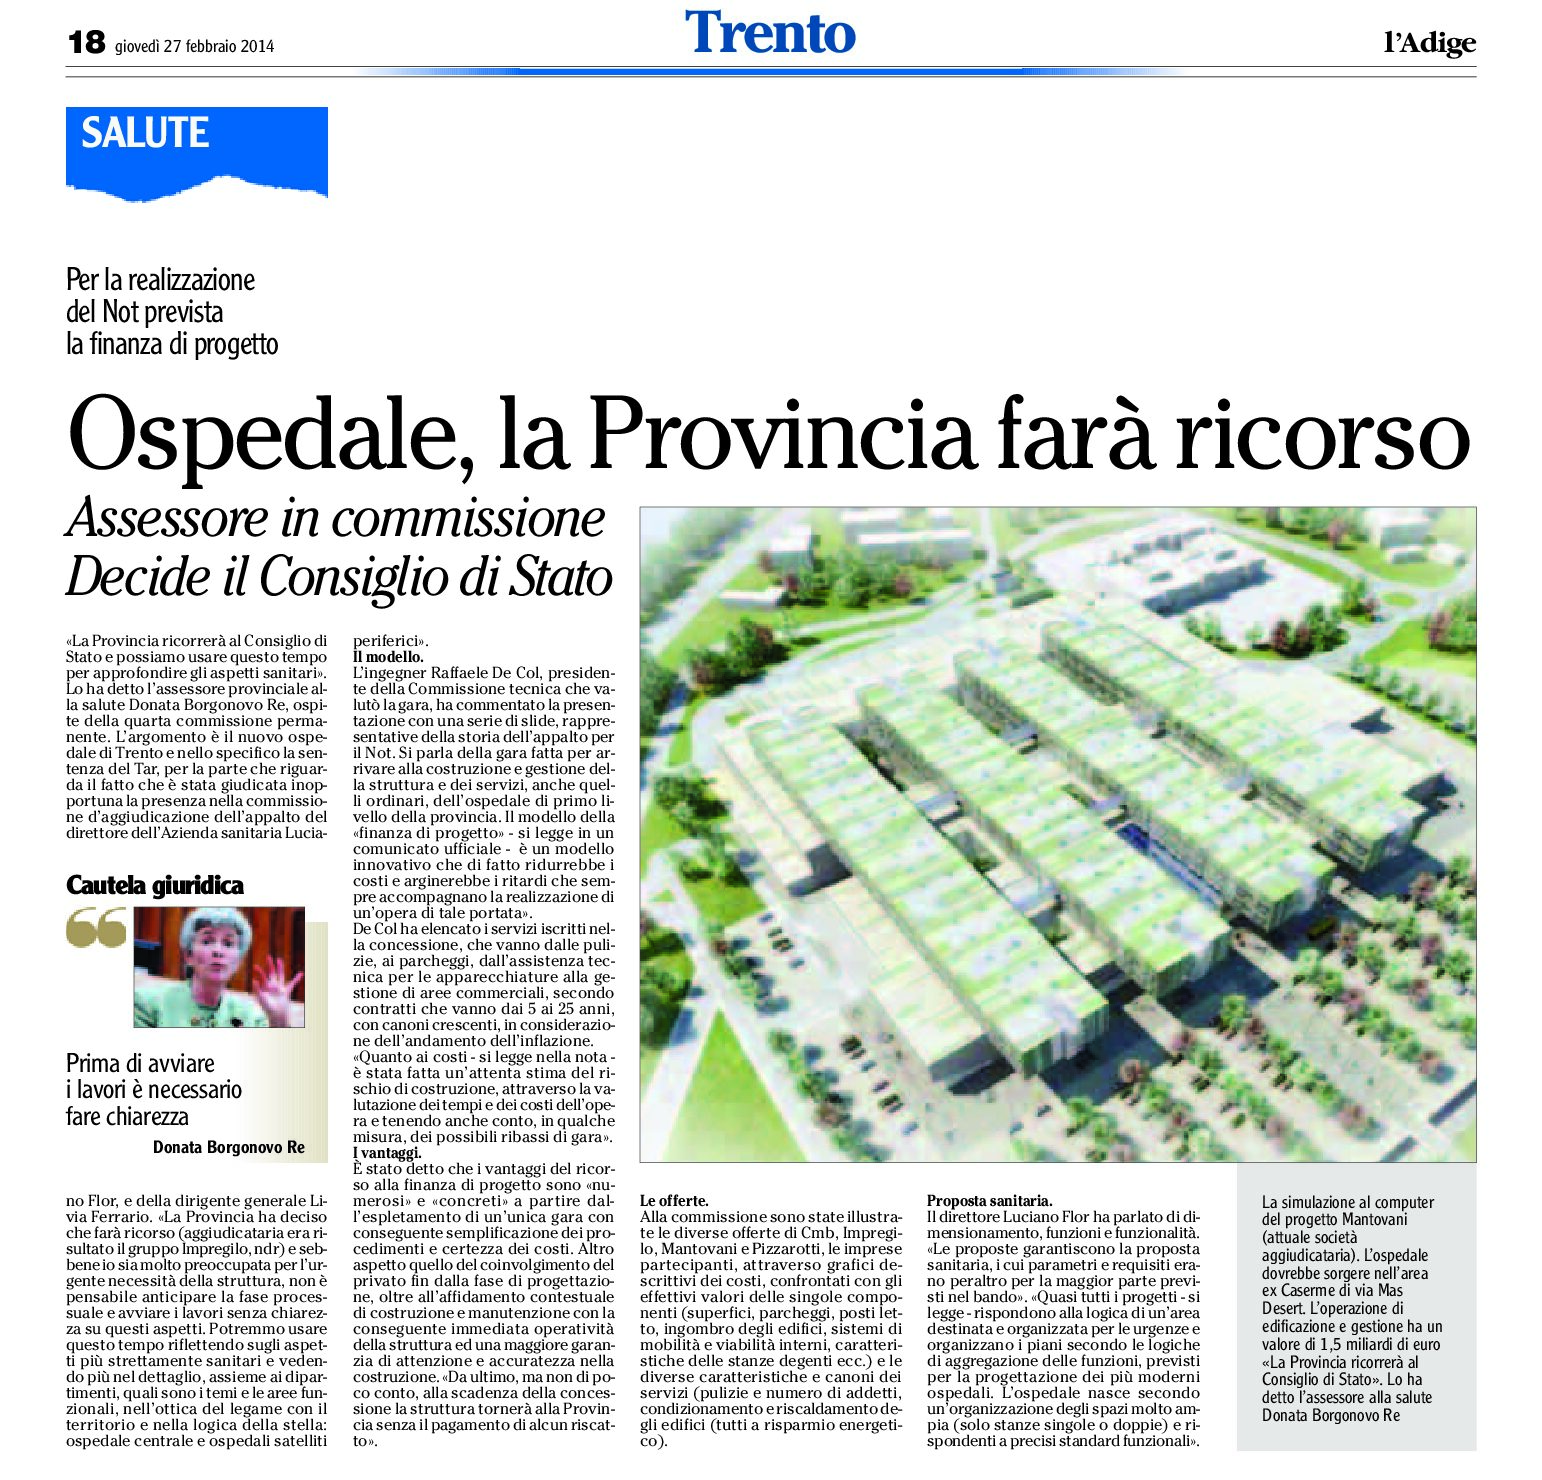 Trento: ospedale, la Provincia farà ricorso